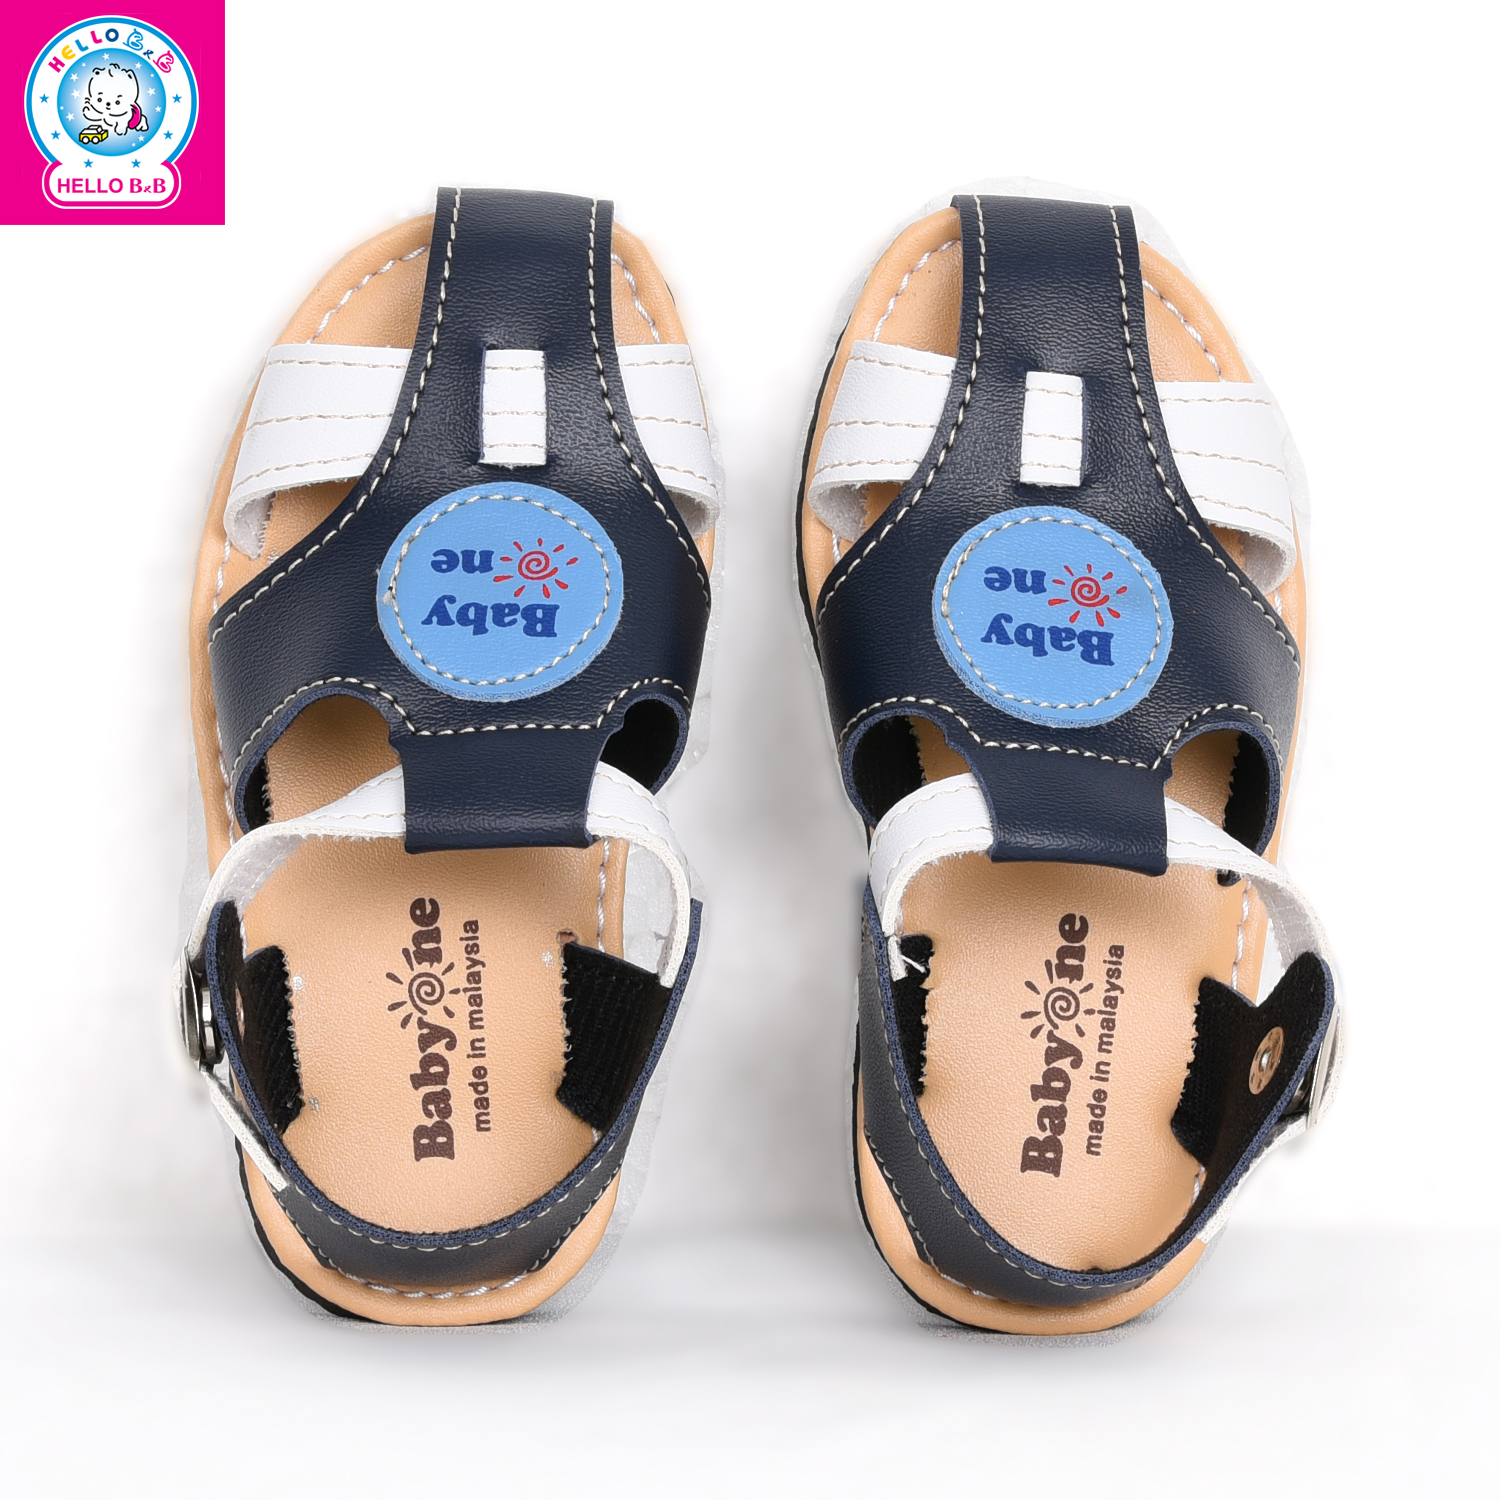 Giày sandal BabyOne 0806 size 24 Navy Blue